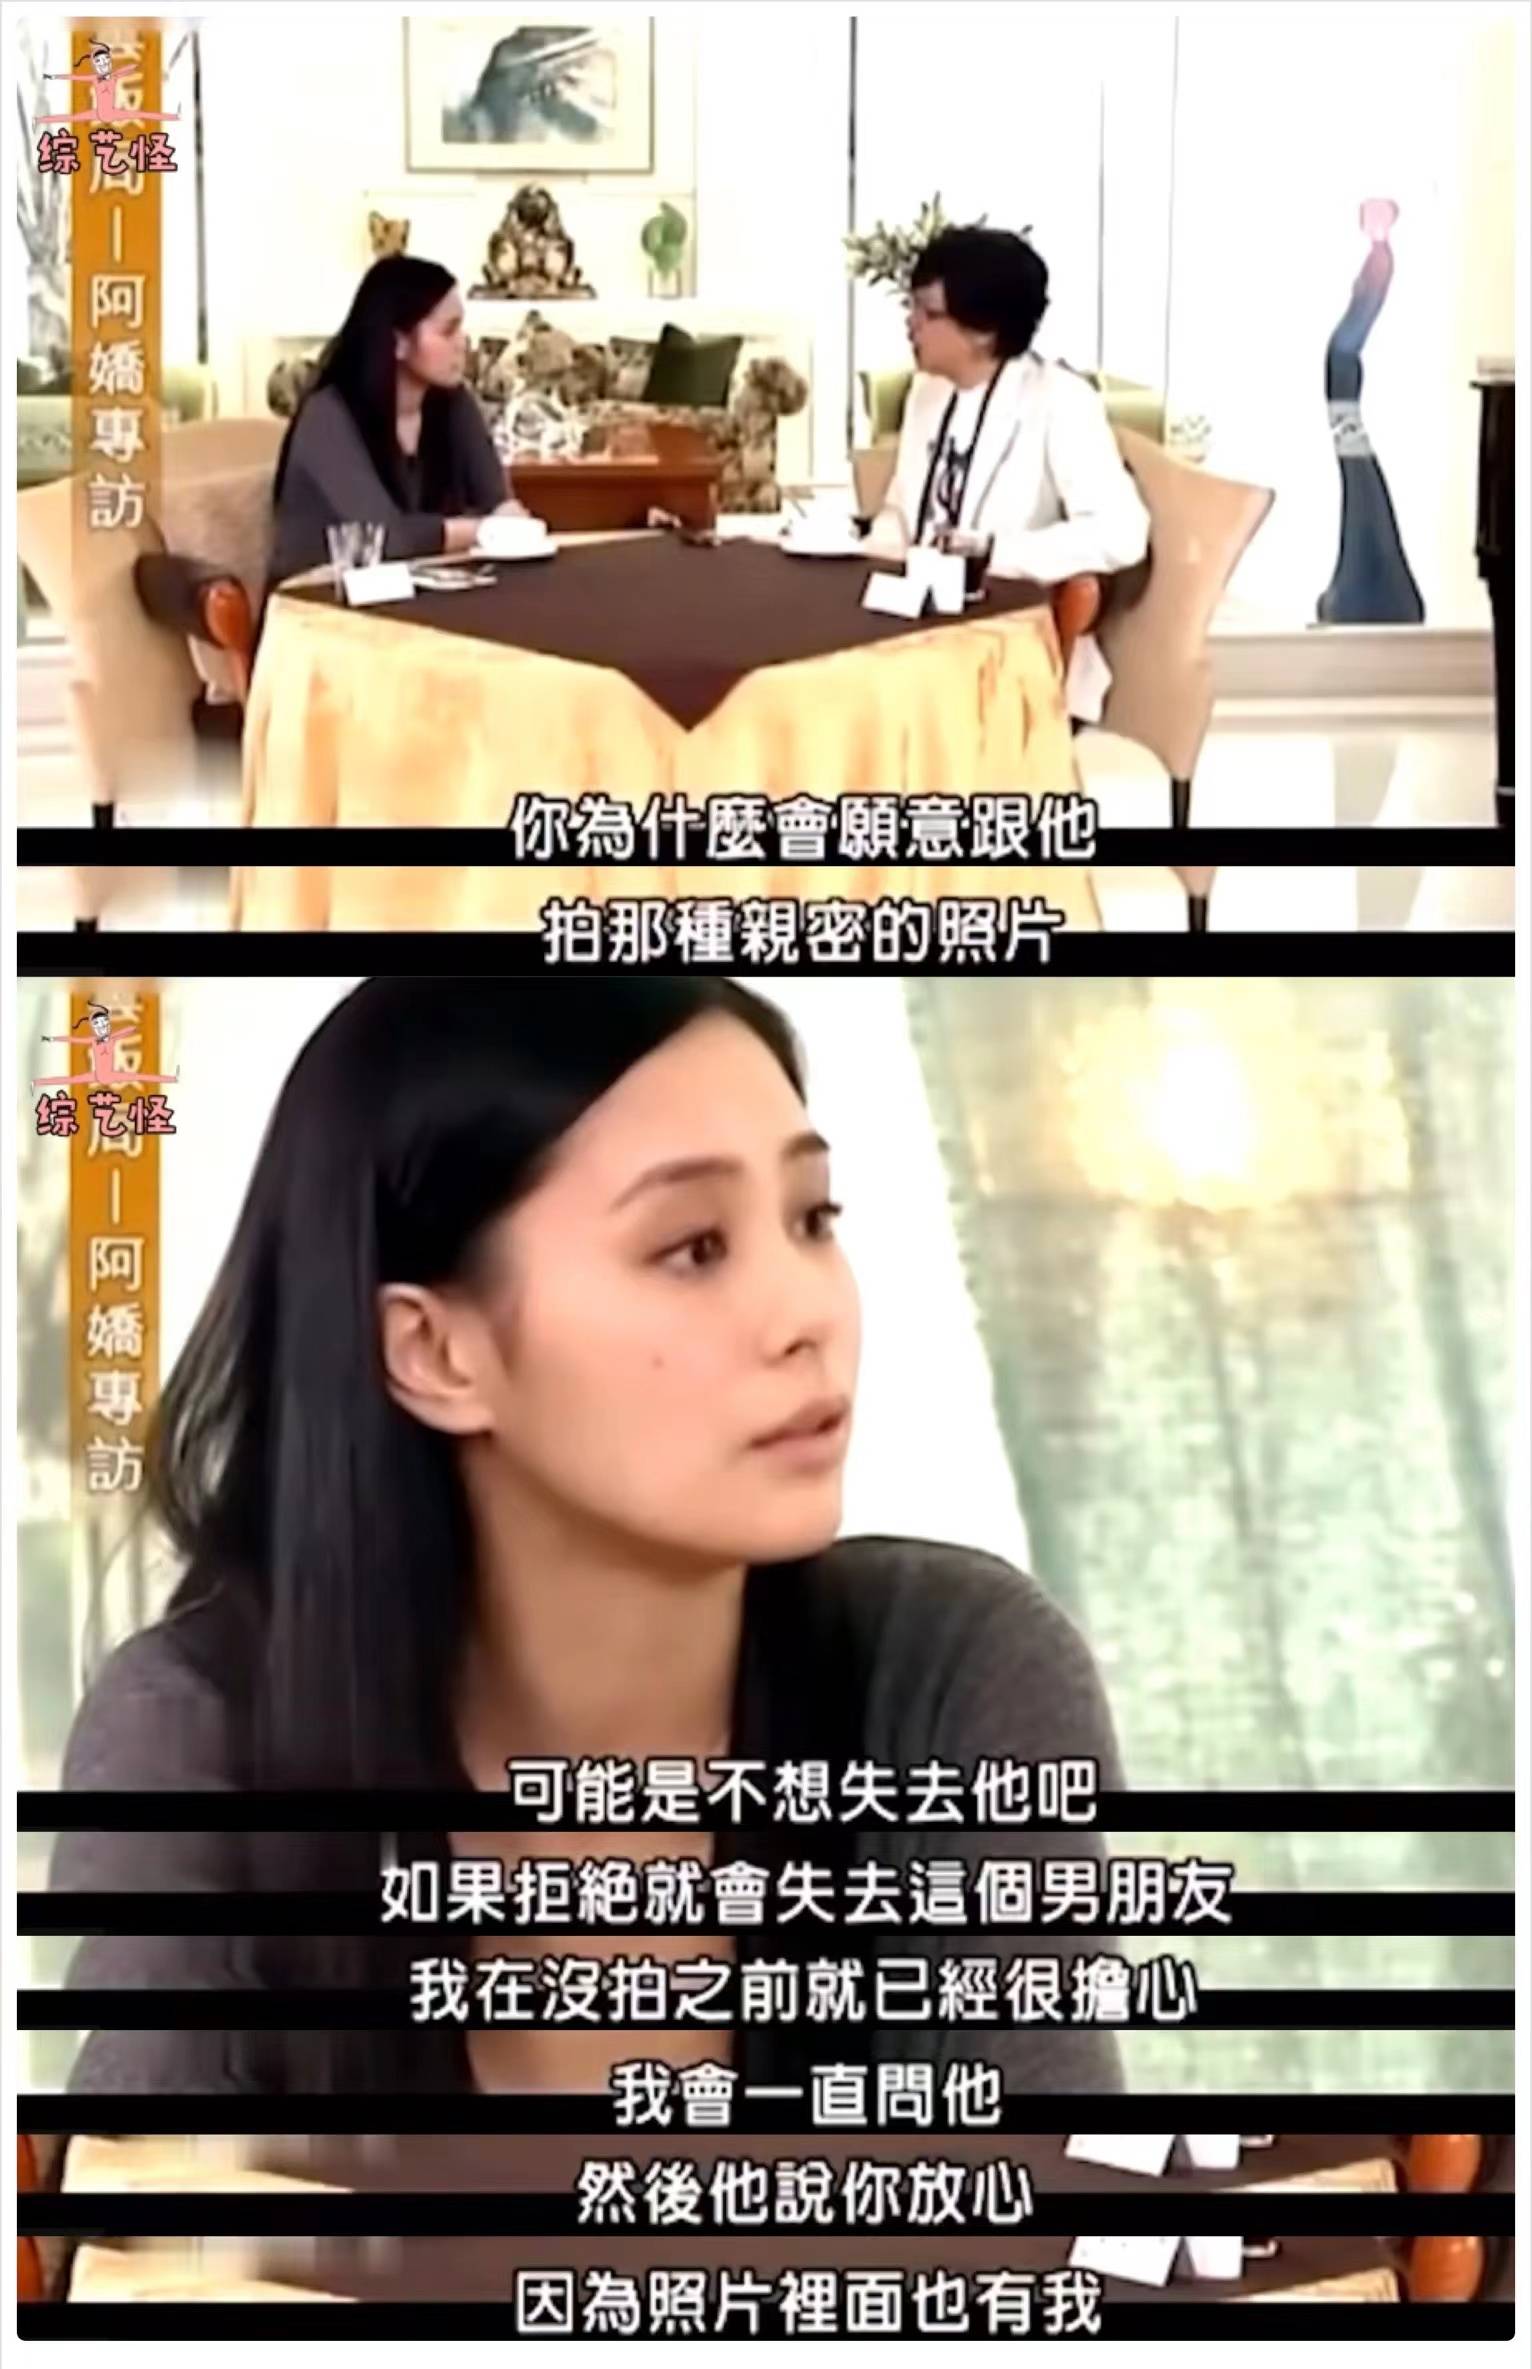 14年后再看阿娇:爱上陈冠希,嫁给赖弘国,对她的伤害有多大?